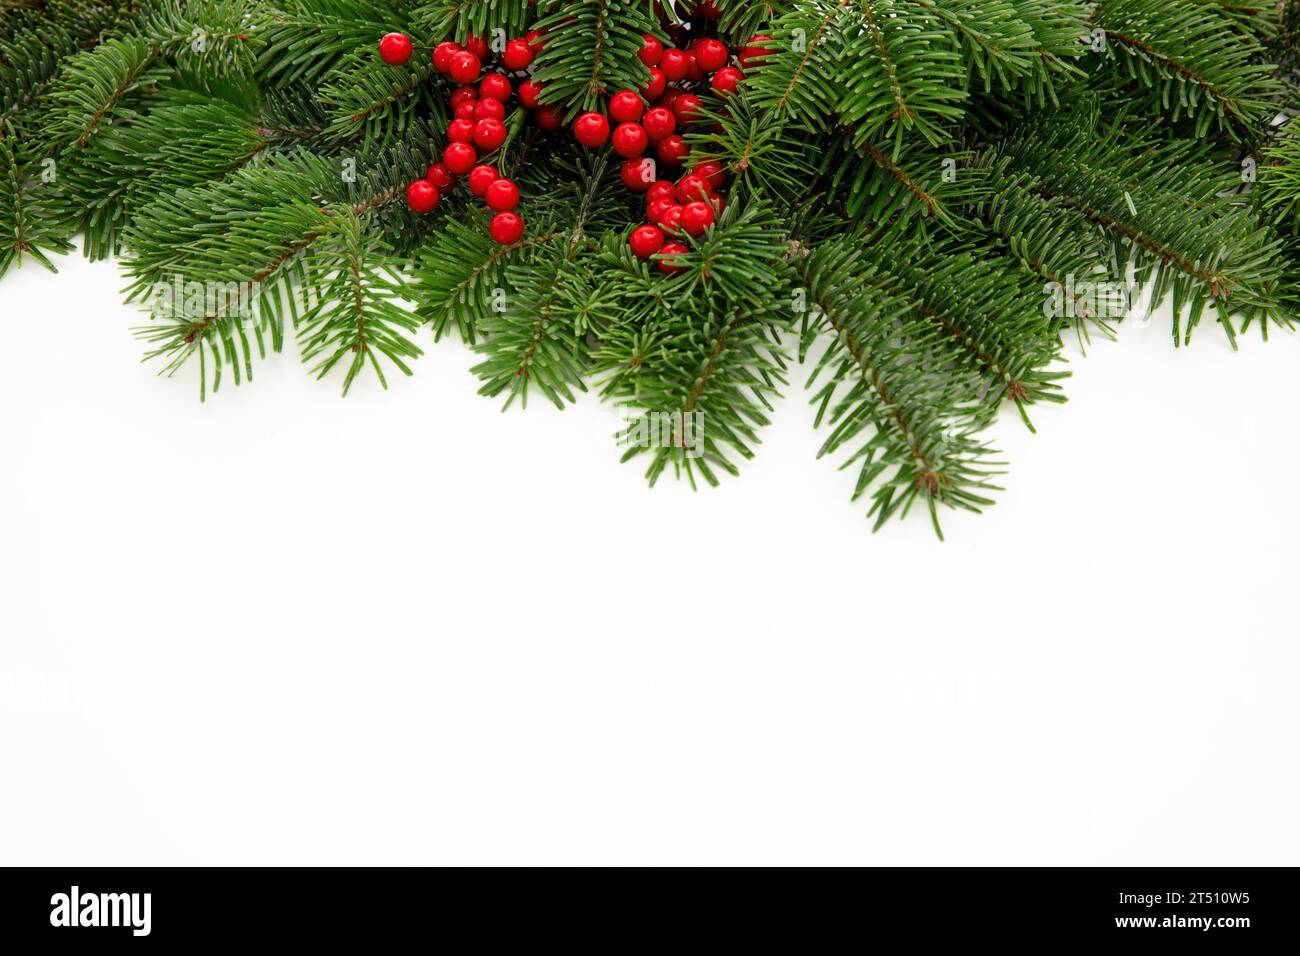 Bordo dell'albero di Natale decorato con bacche rosse isolate su sfondo bianco, modello di biglietto d'auguri Foto Stock